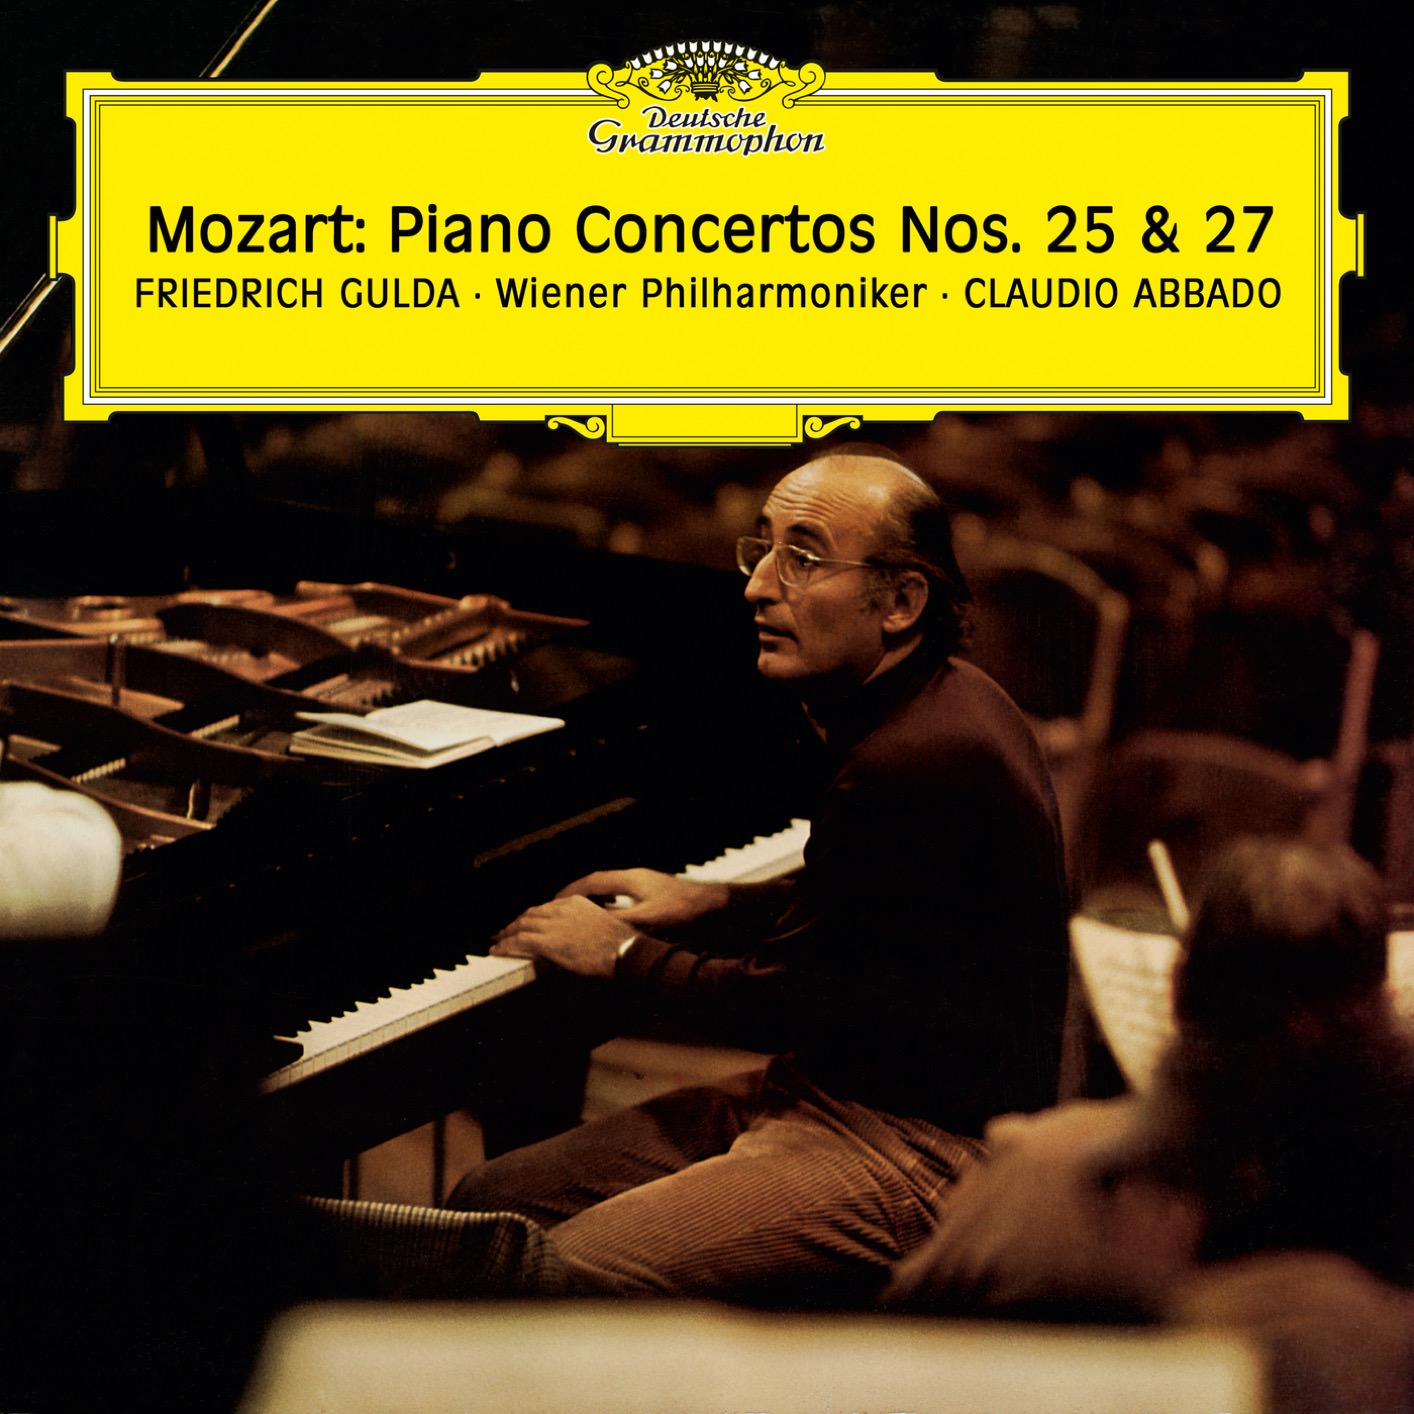 Friedrich Gulda, Wiener Philharmoniker & Claudio Abbado - Mozart: Piano Concertos No. 25 & 27 (1974/2018) [FLAC 24bit/96kHz]